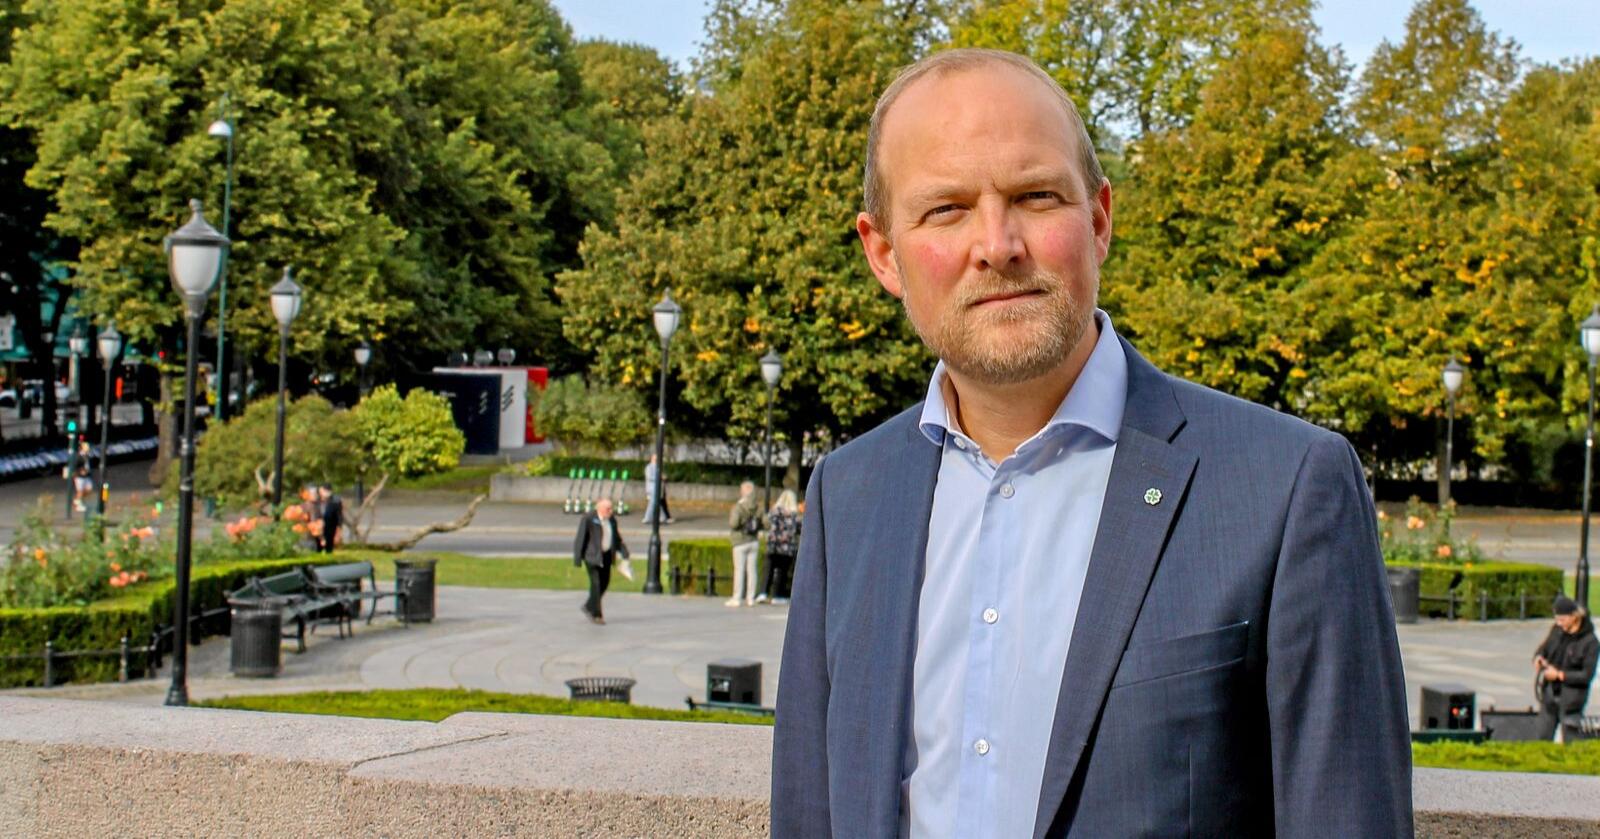 Stortingsrepresentant Ole André Myhrvold (Østfold Sp) ønsker at regjeringen skal komme på banen i den tøffe situasjonen til Norske Skog. Foto: Eskild Johansen